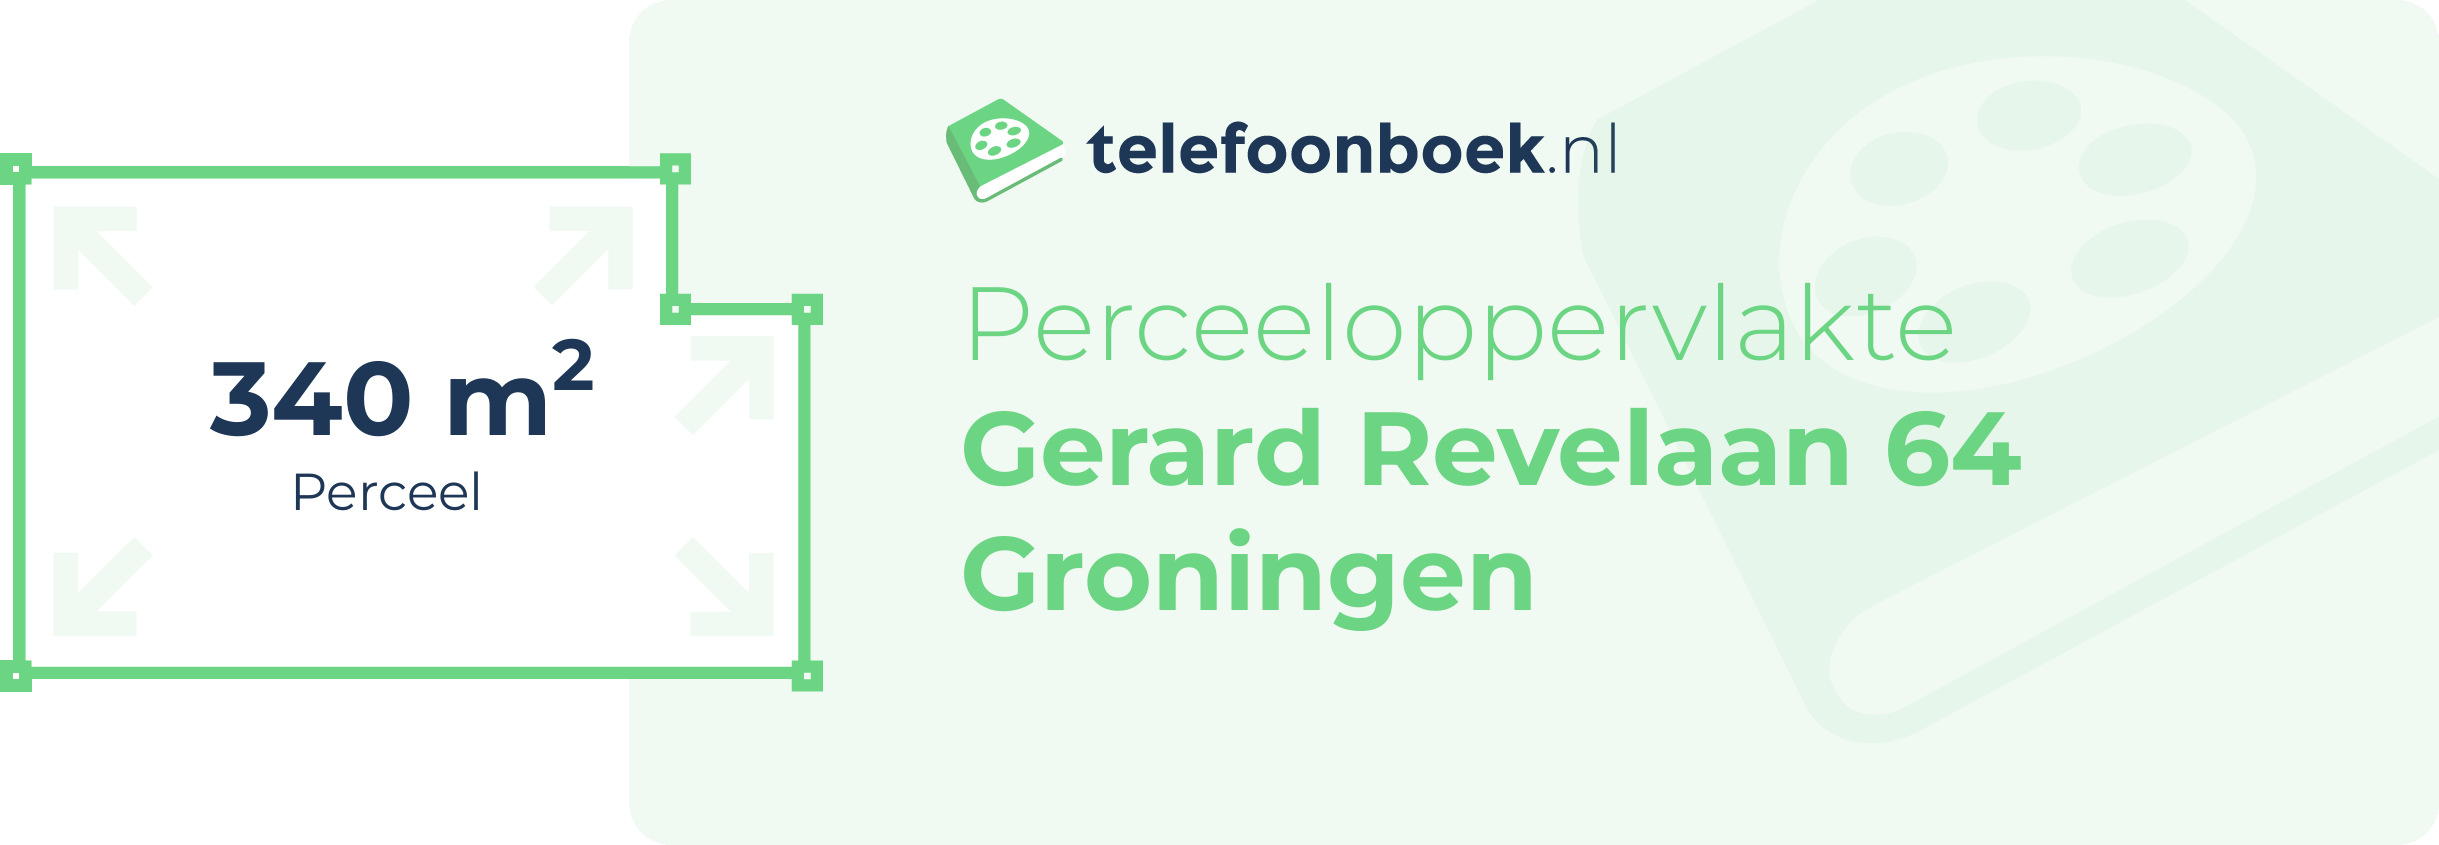 Perceeloppervlakte Gerard Revelaan 64 Groningen